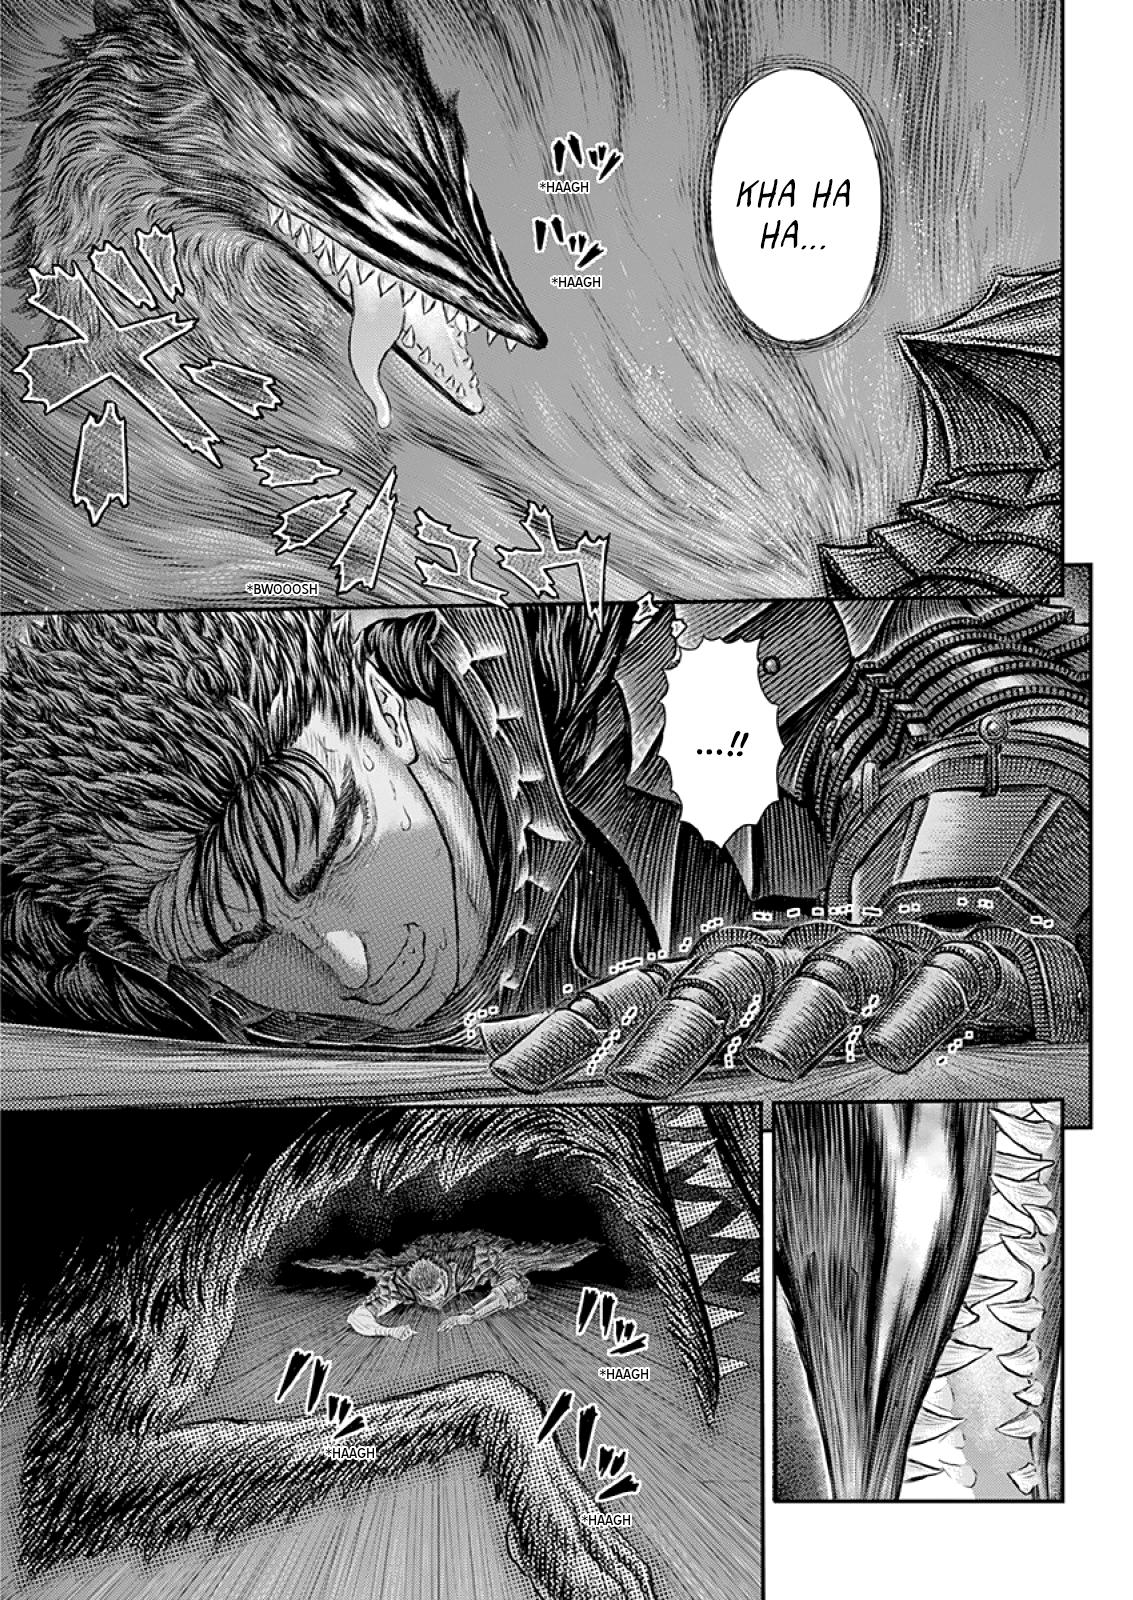 Berserk Manga Chapter 373 image 09